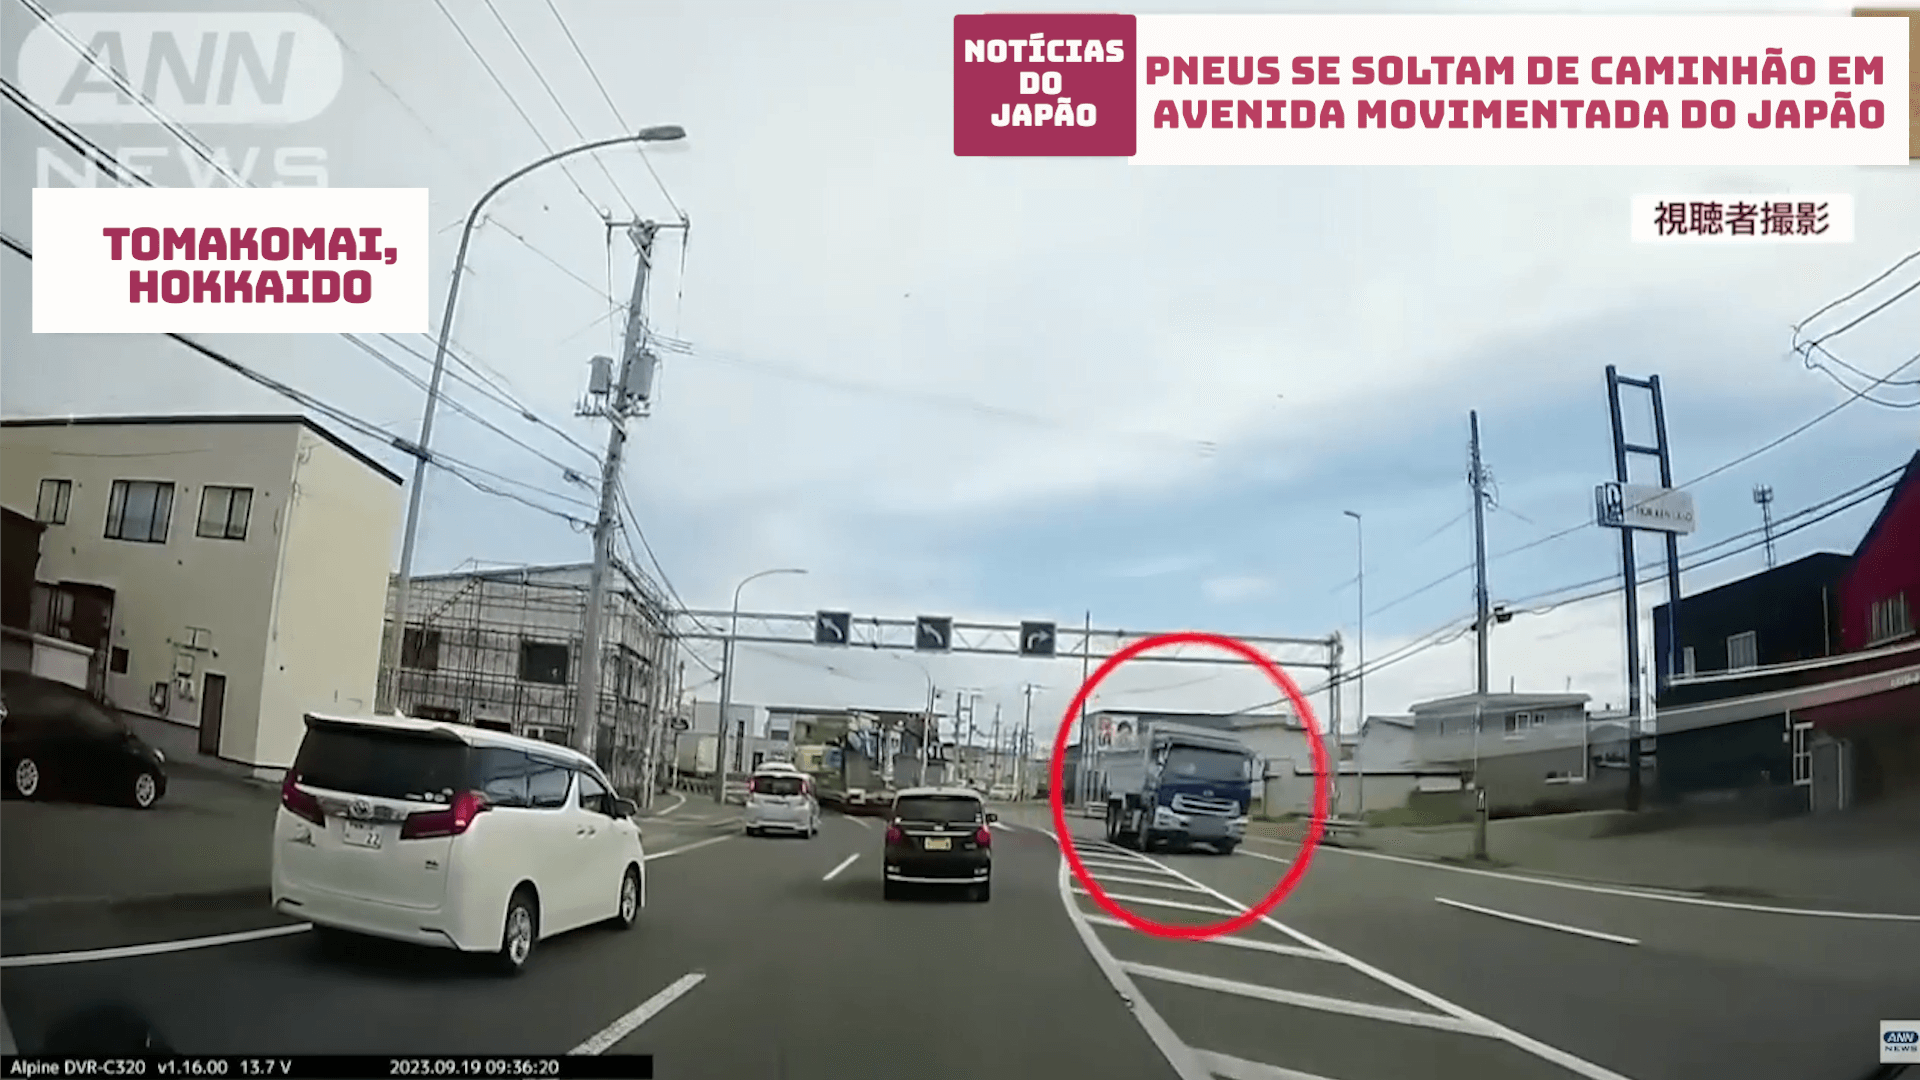 Pneus se soltam de caminhão em avenida movimentada do Japão 